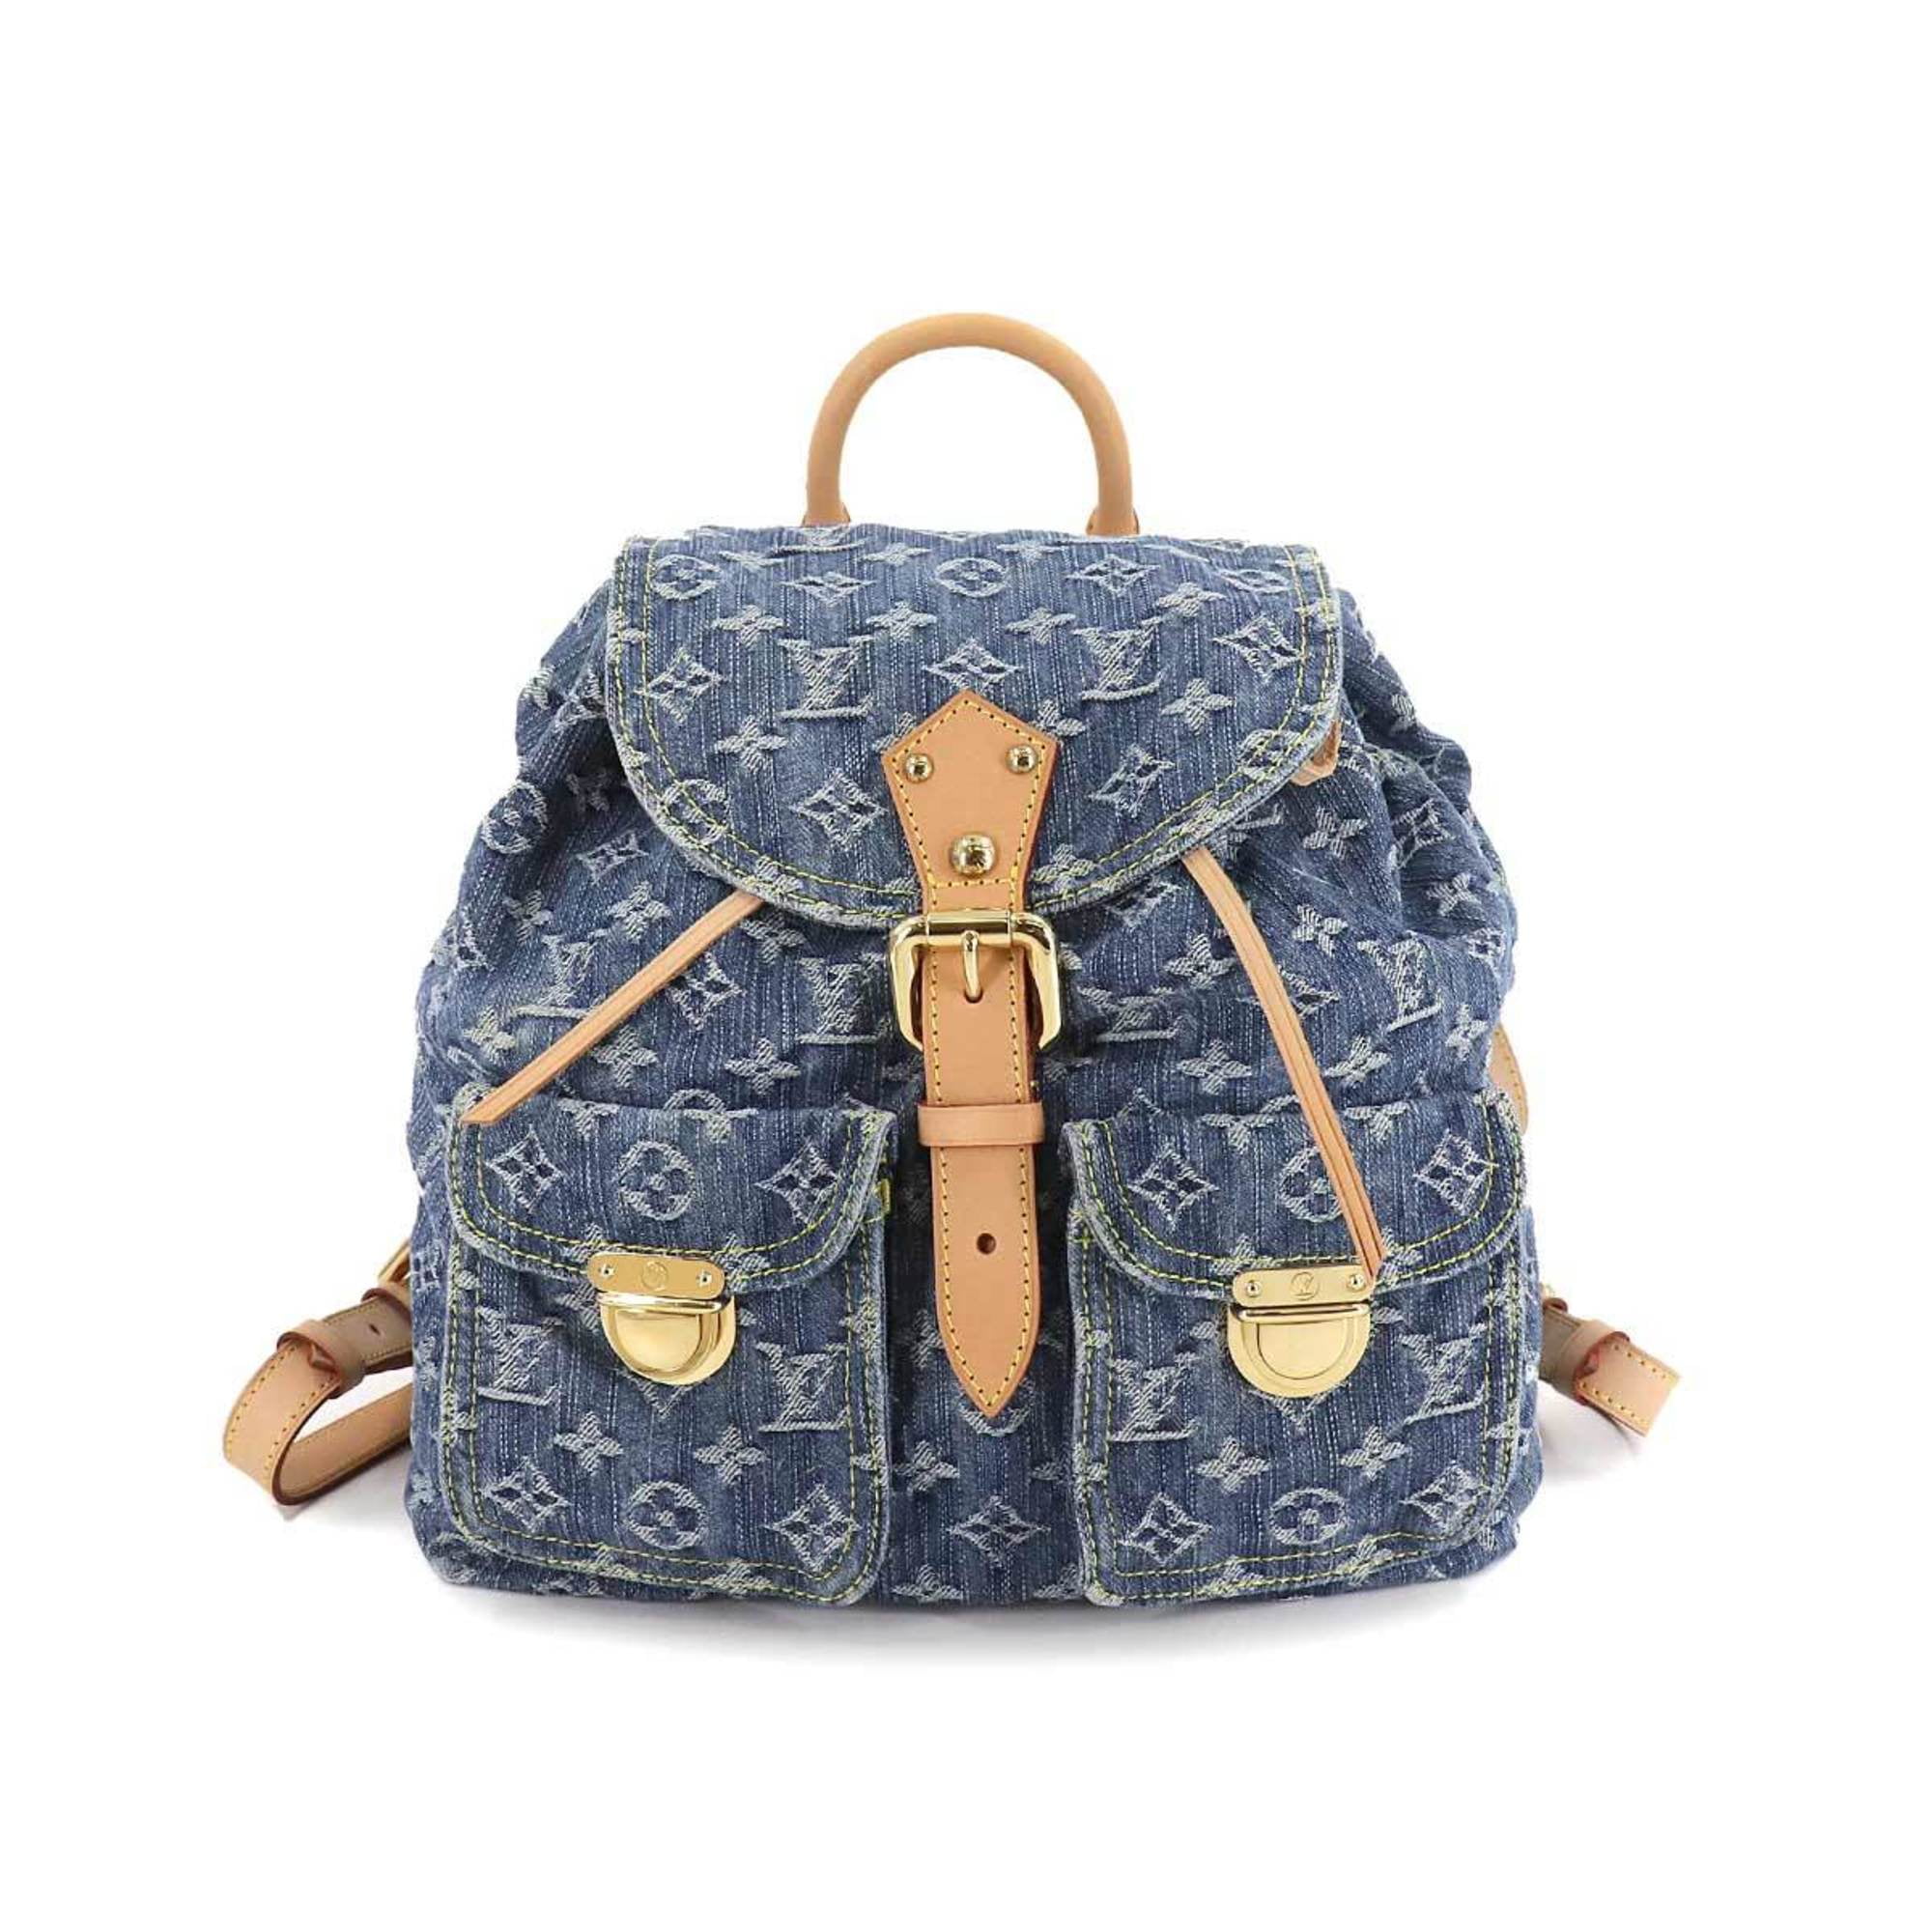 Louis Vuitton Denim Sac A Dos PM Backpack - Farfetch